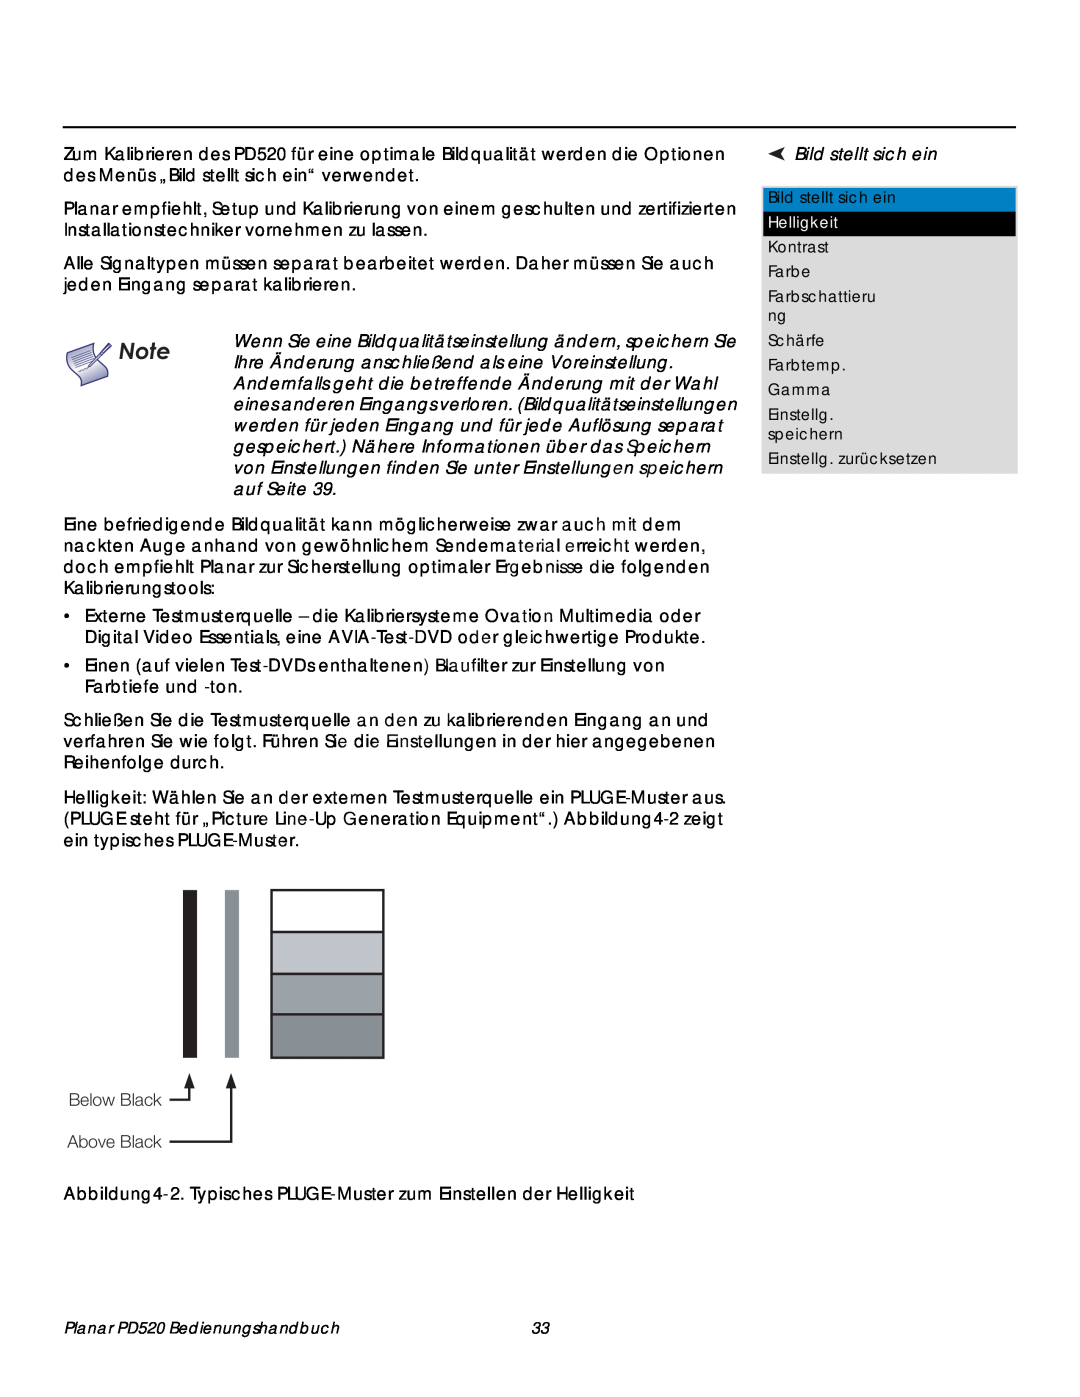 Planar PD520 manual Below Black Above Black, Bild stellt sich ein, Reihenfolge durch 